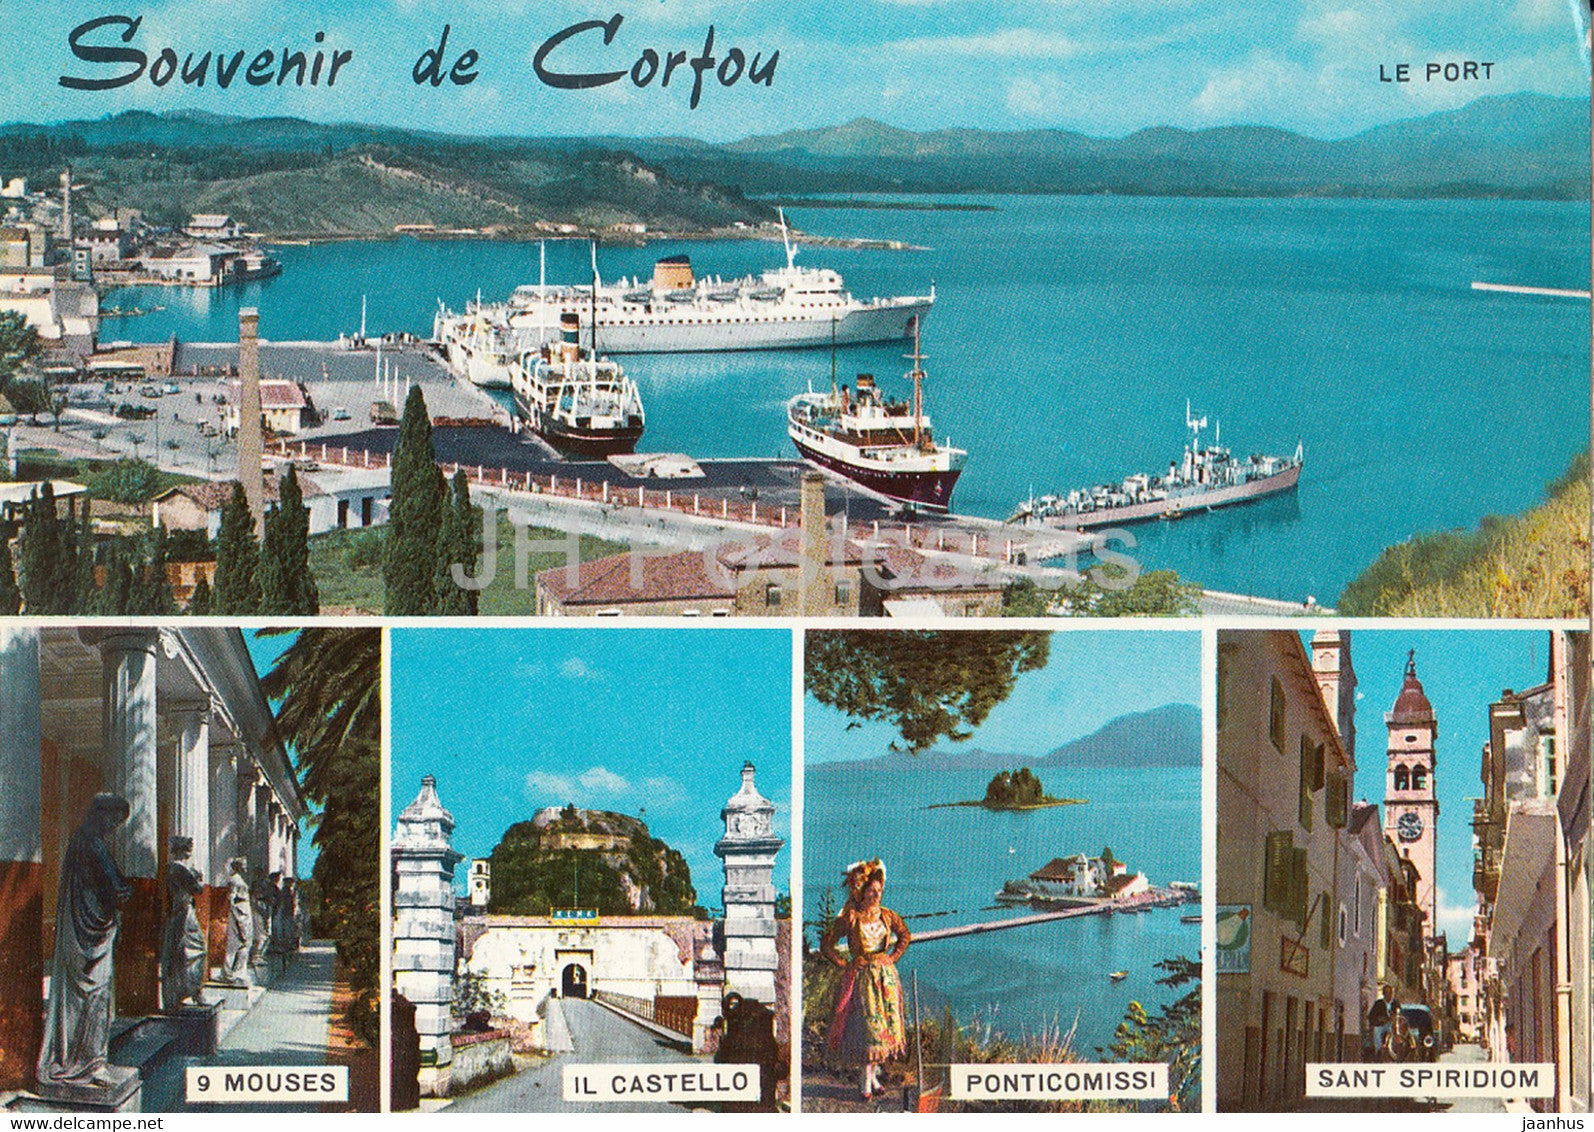 Souvenir de Corfou - Corfu - ship - port - 9 Mouses - Il Castello - Ponticomissi - multiview - Greece - used - JH Postcards